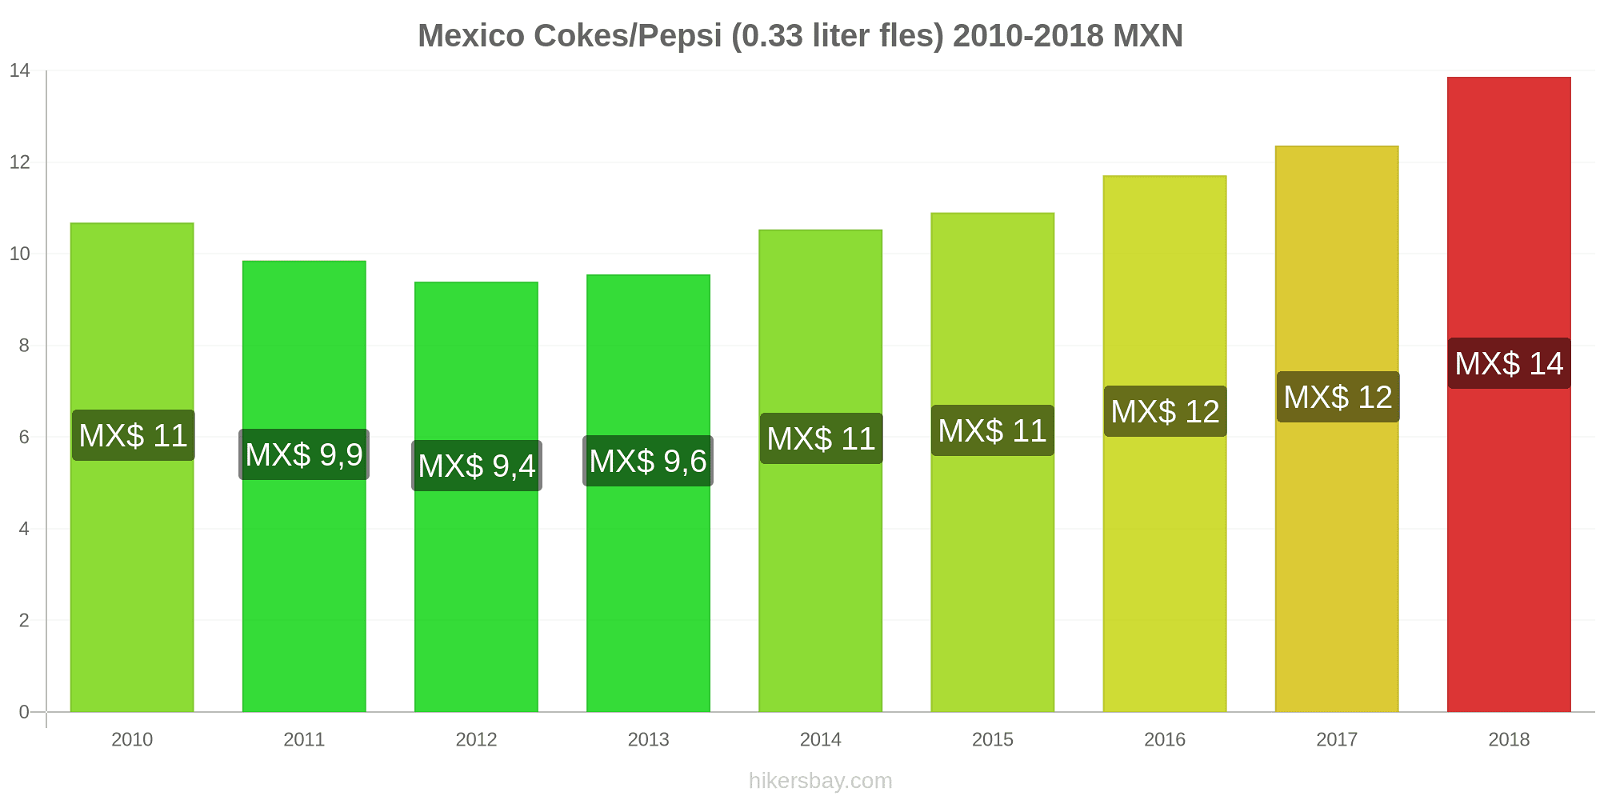 Mexico prijswijzigingen Cokes/Pepsi (0,33 literfles) hikersbay.com